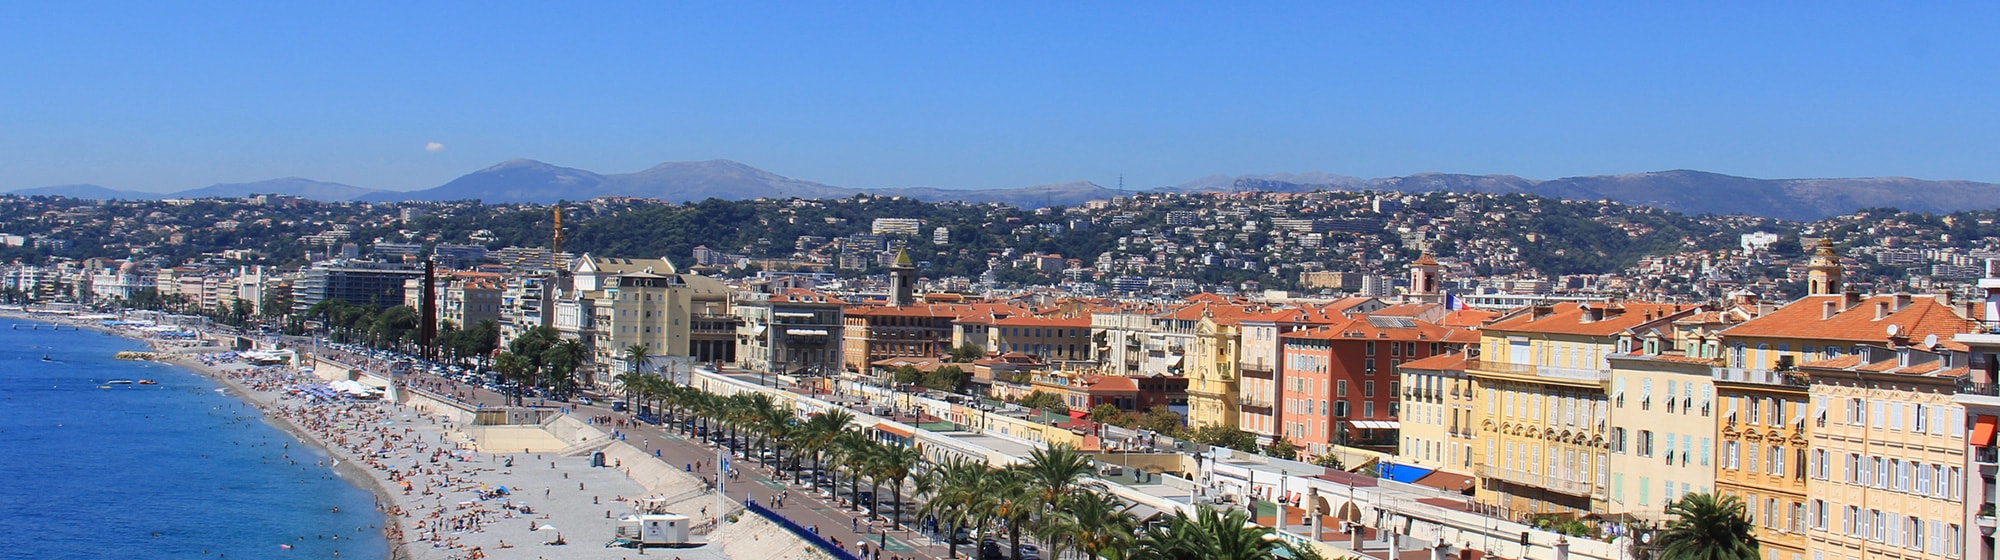 Panorámica de la ciudad de Niza con su playa